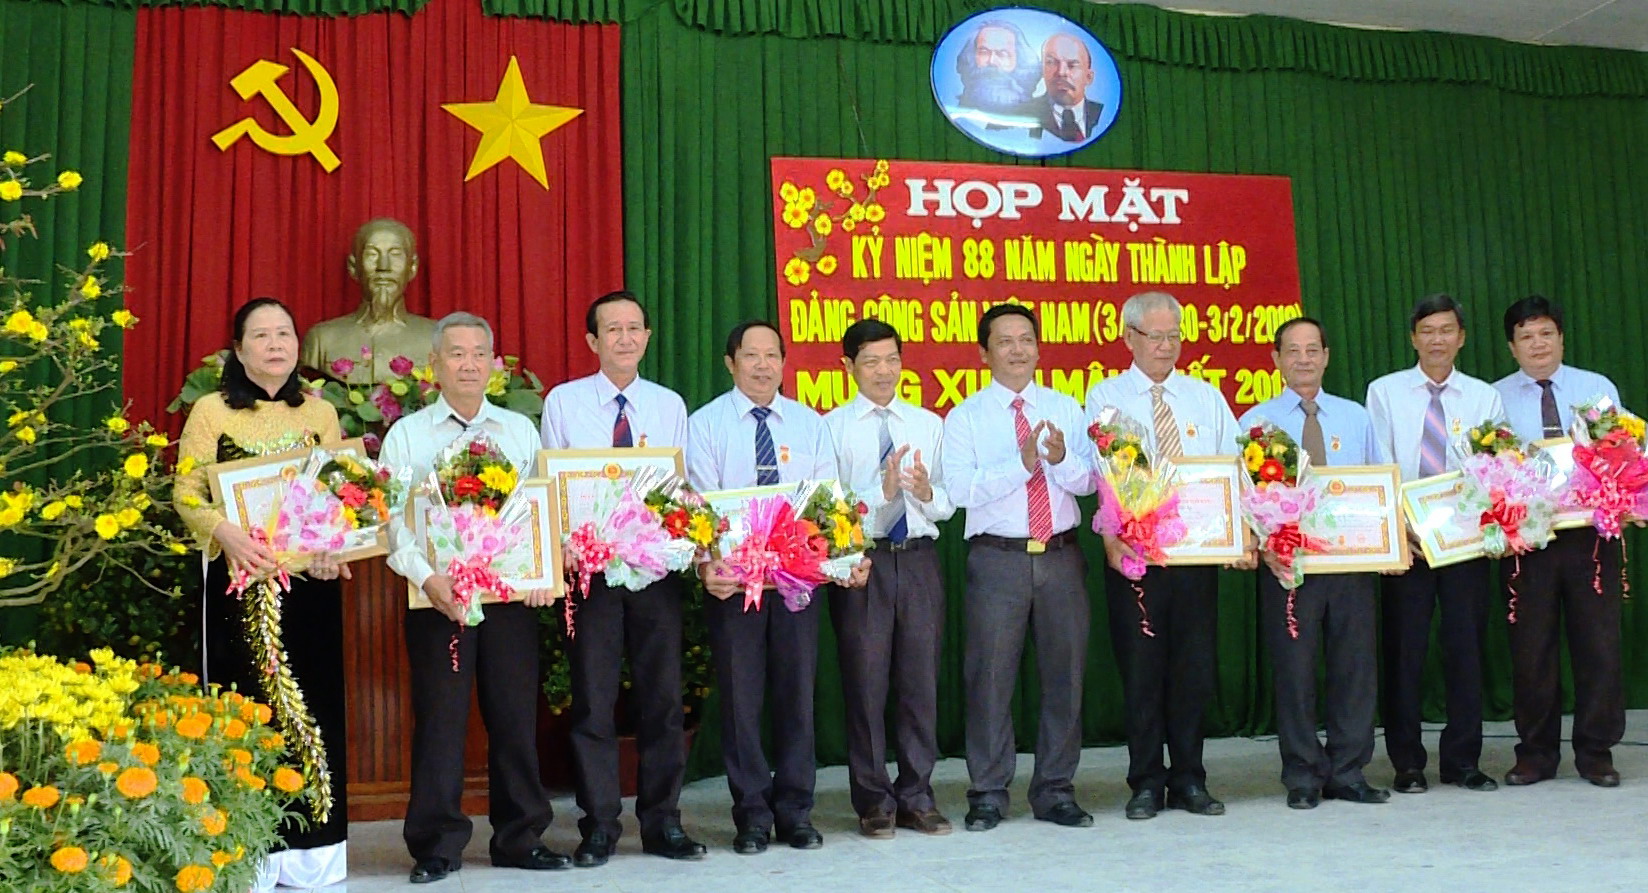 Ông Hồ Văn Minh- Tỉnh ủy viên, Bí thư Huyện ủy Long Hồ trao Huy hiệu Đảng cho các đảng viên 